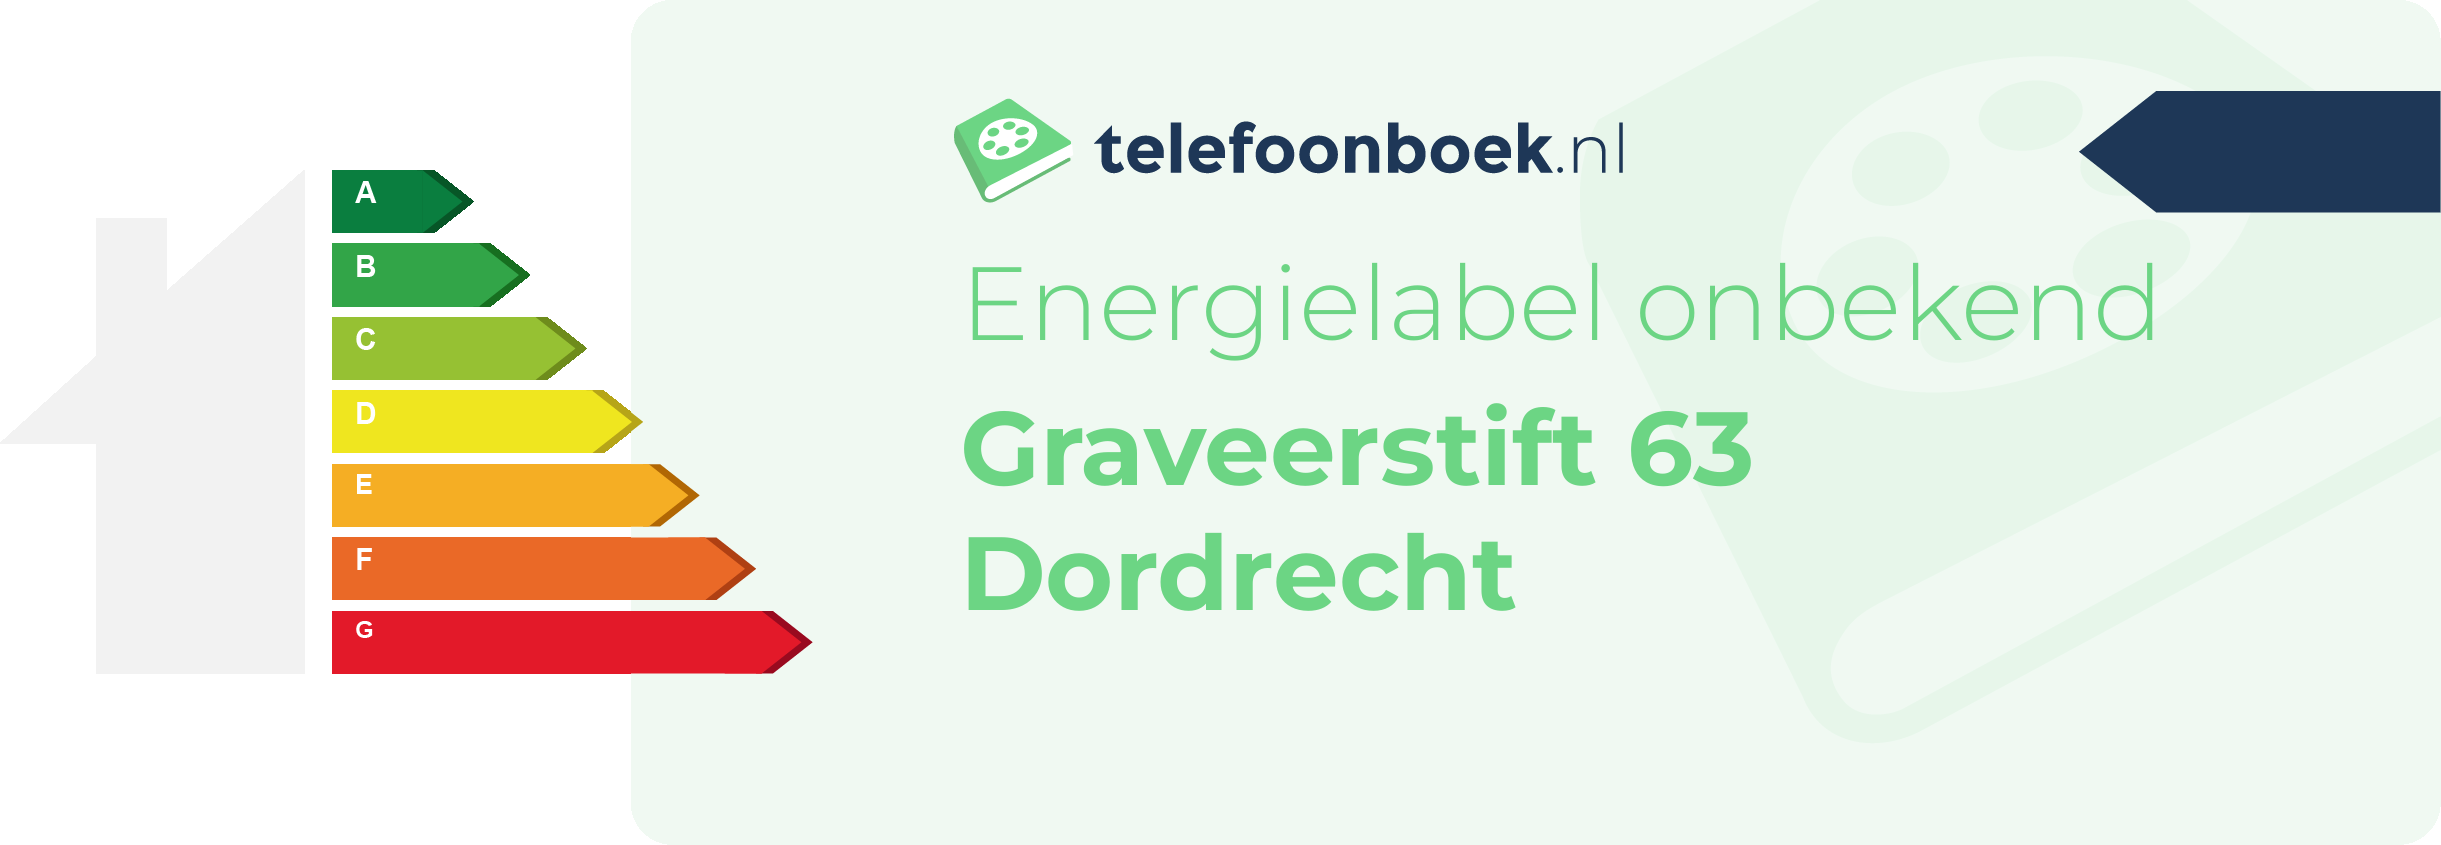 Energielabel Graveerstift 63 Dordrecht